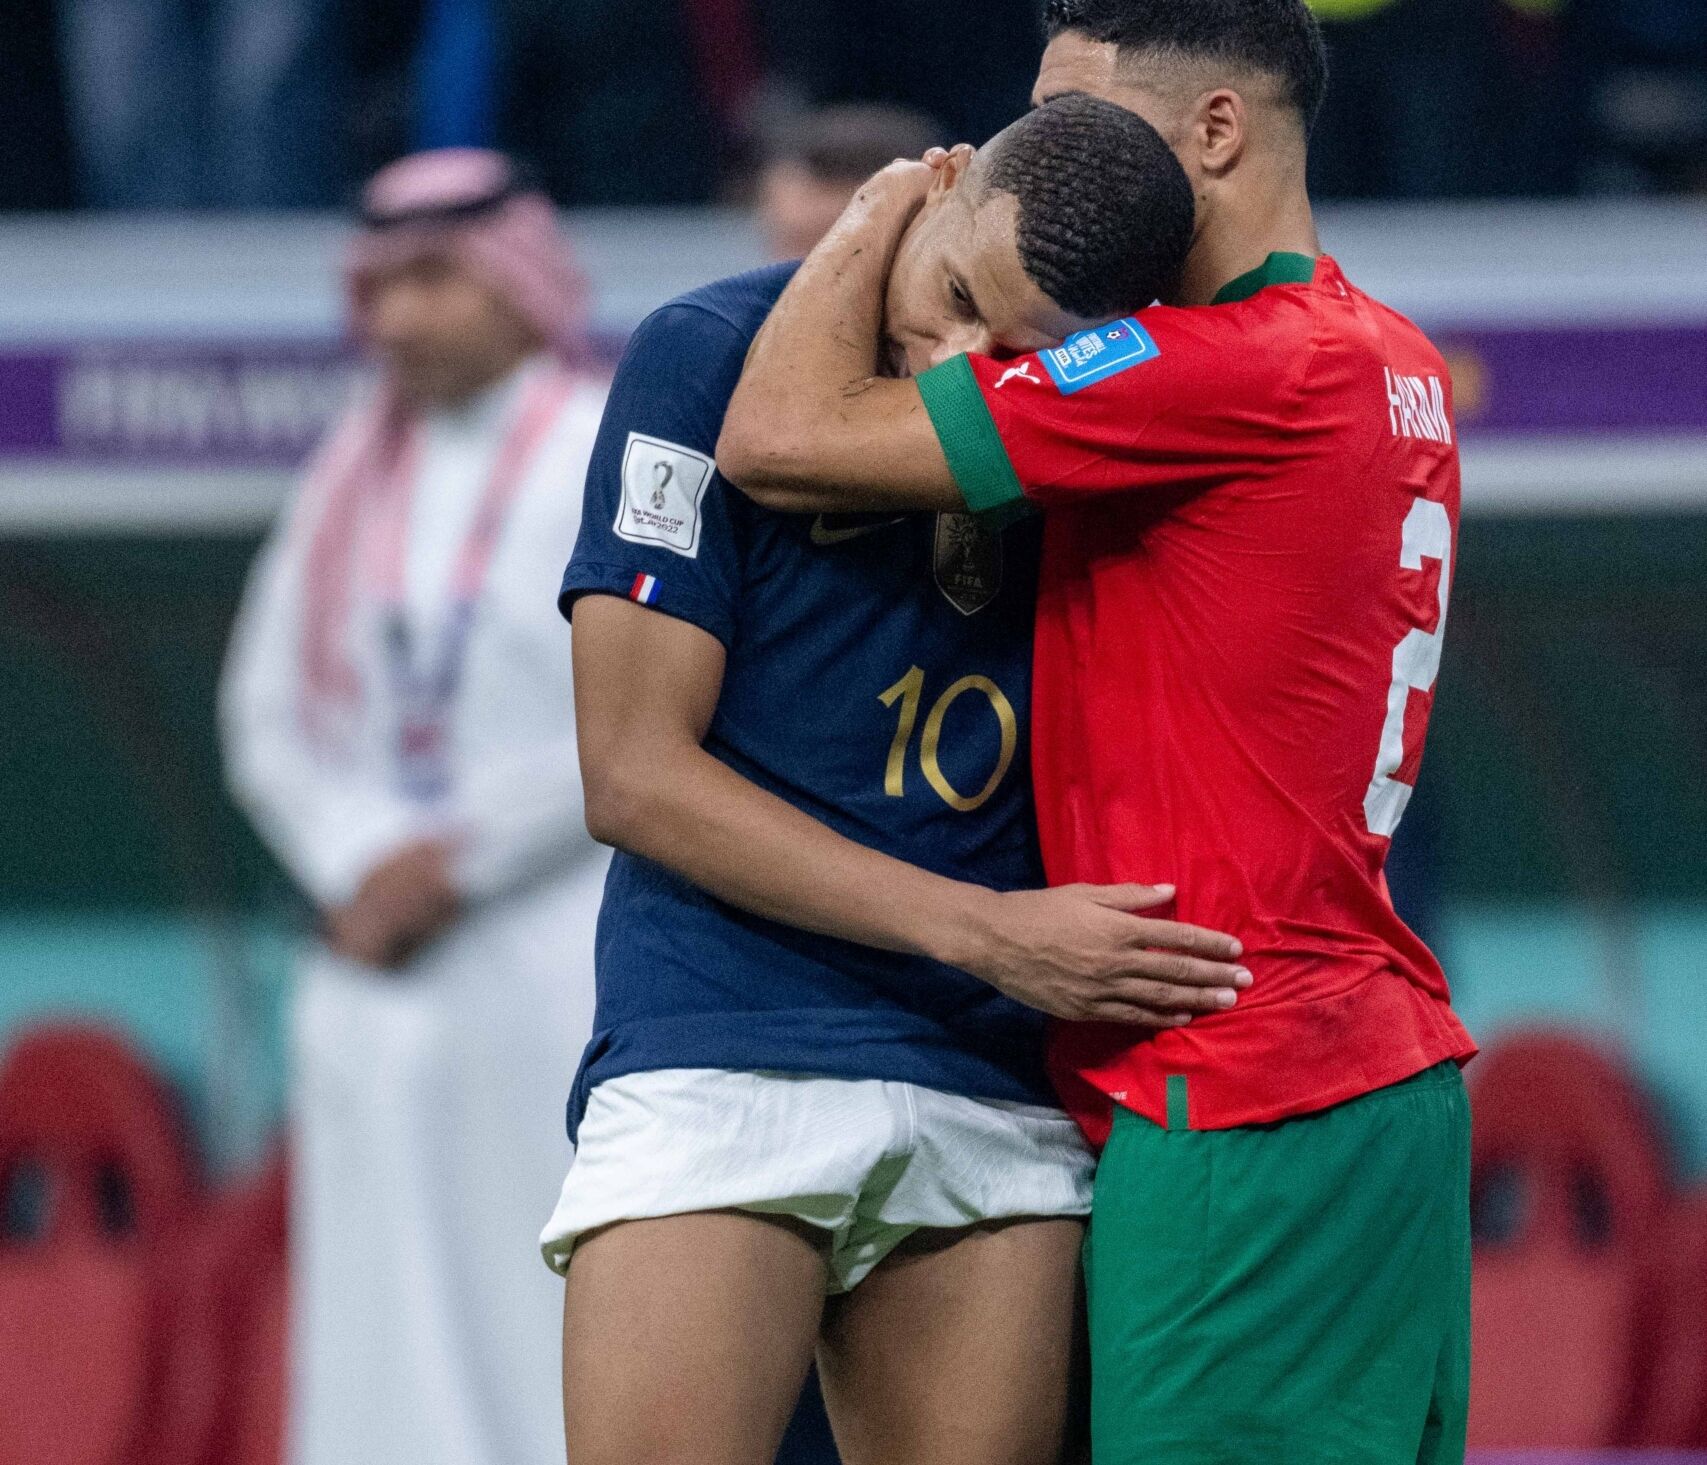 La foto de dos estrellas del fútbol abrazándose en el Mundial se hace viral